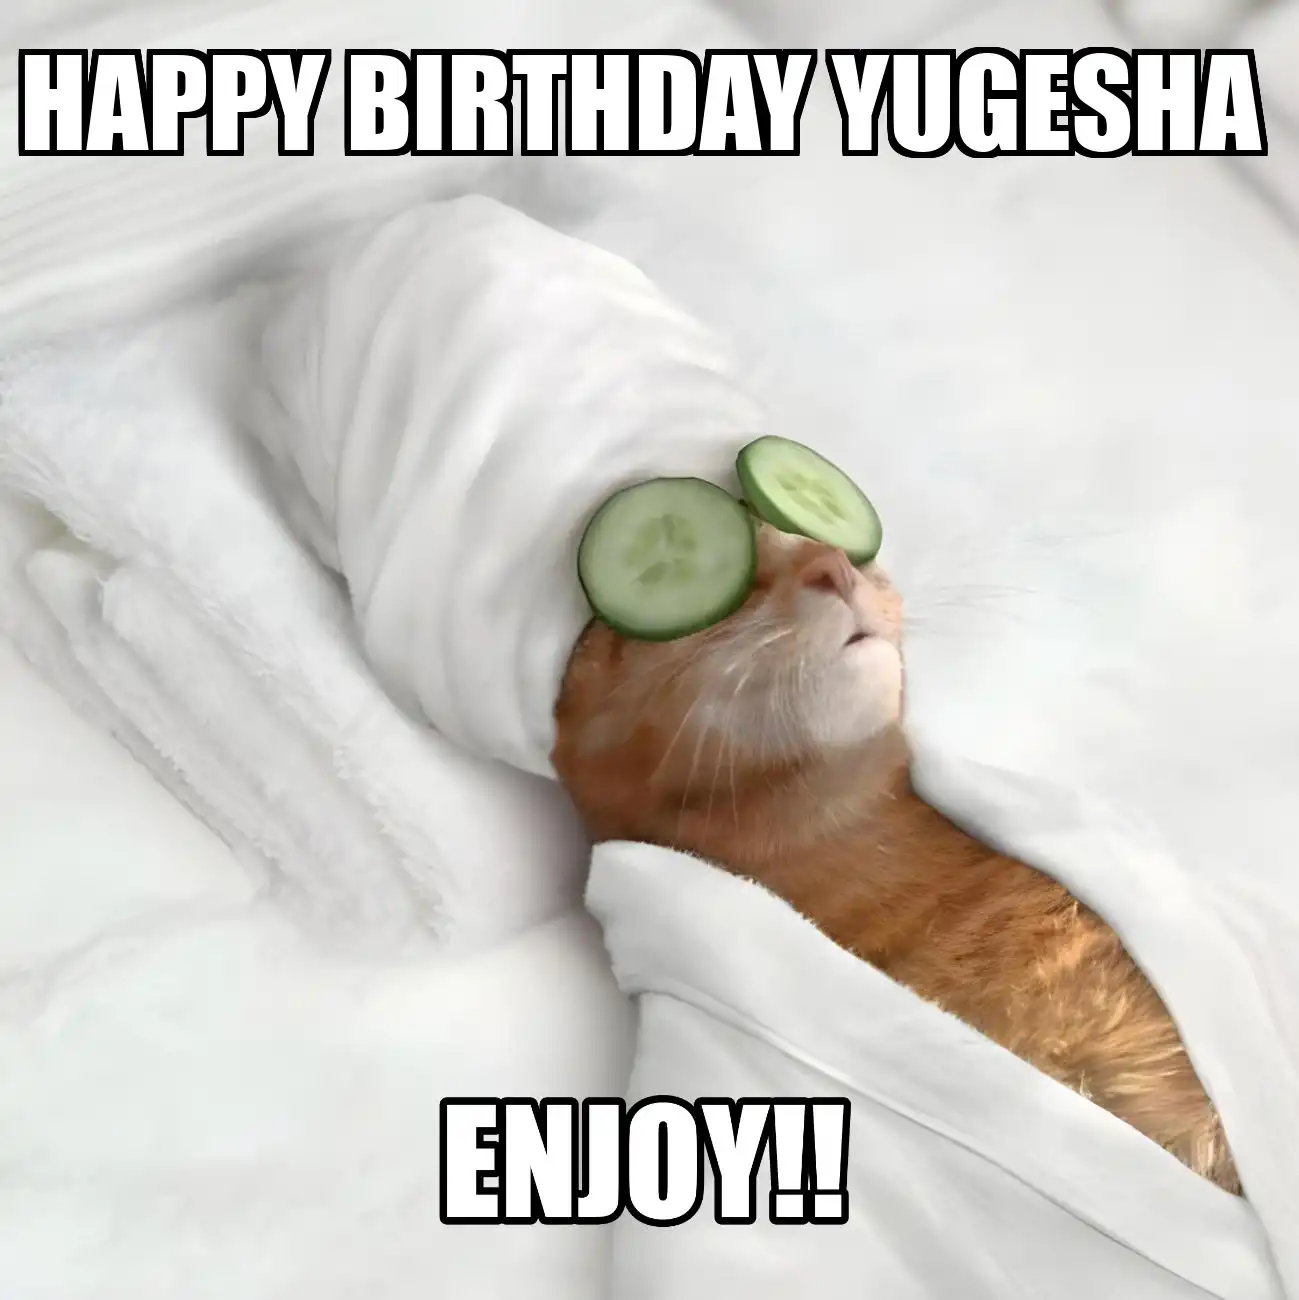 Happy Birthday Yugesha Enjoy Cat Meme